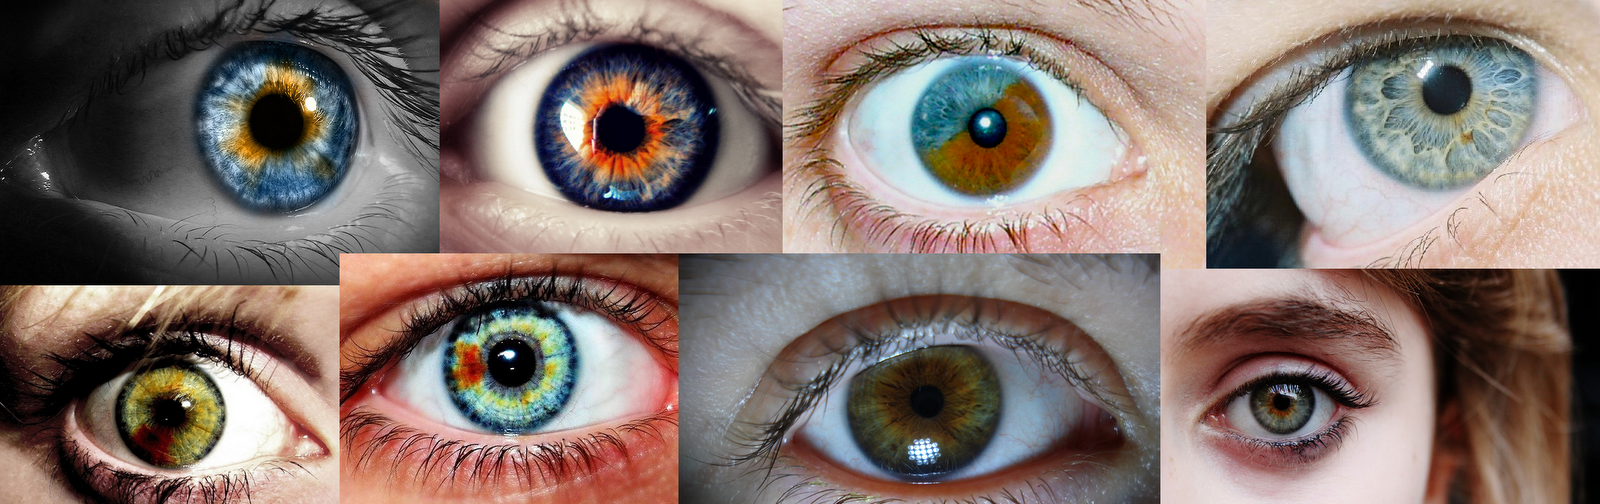 Несколько насколько. Гетерохромия Радужки глаз. Поликория и гетерохромия. Центральная гетерохромия радужной оболочки глаза. Гетерохромия карих глаз.